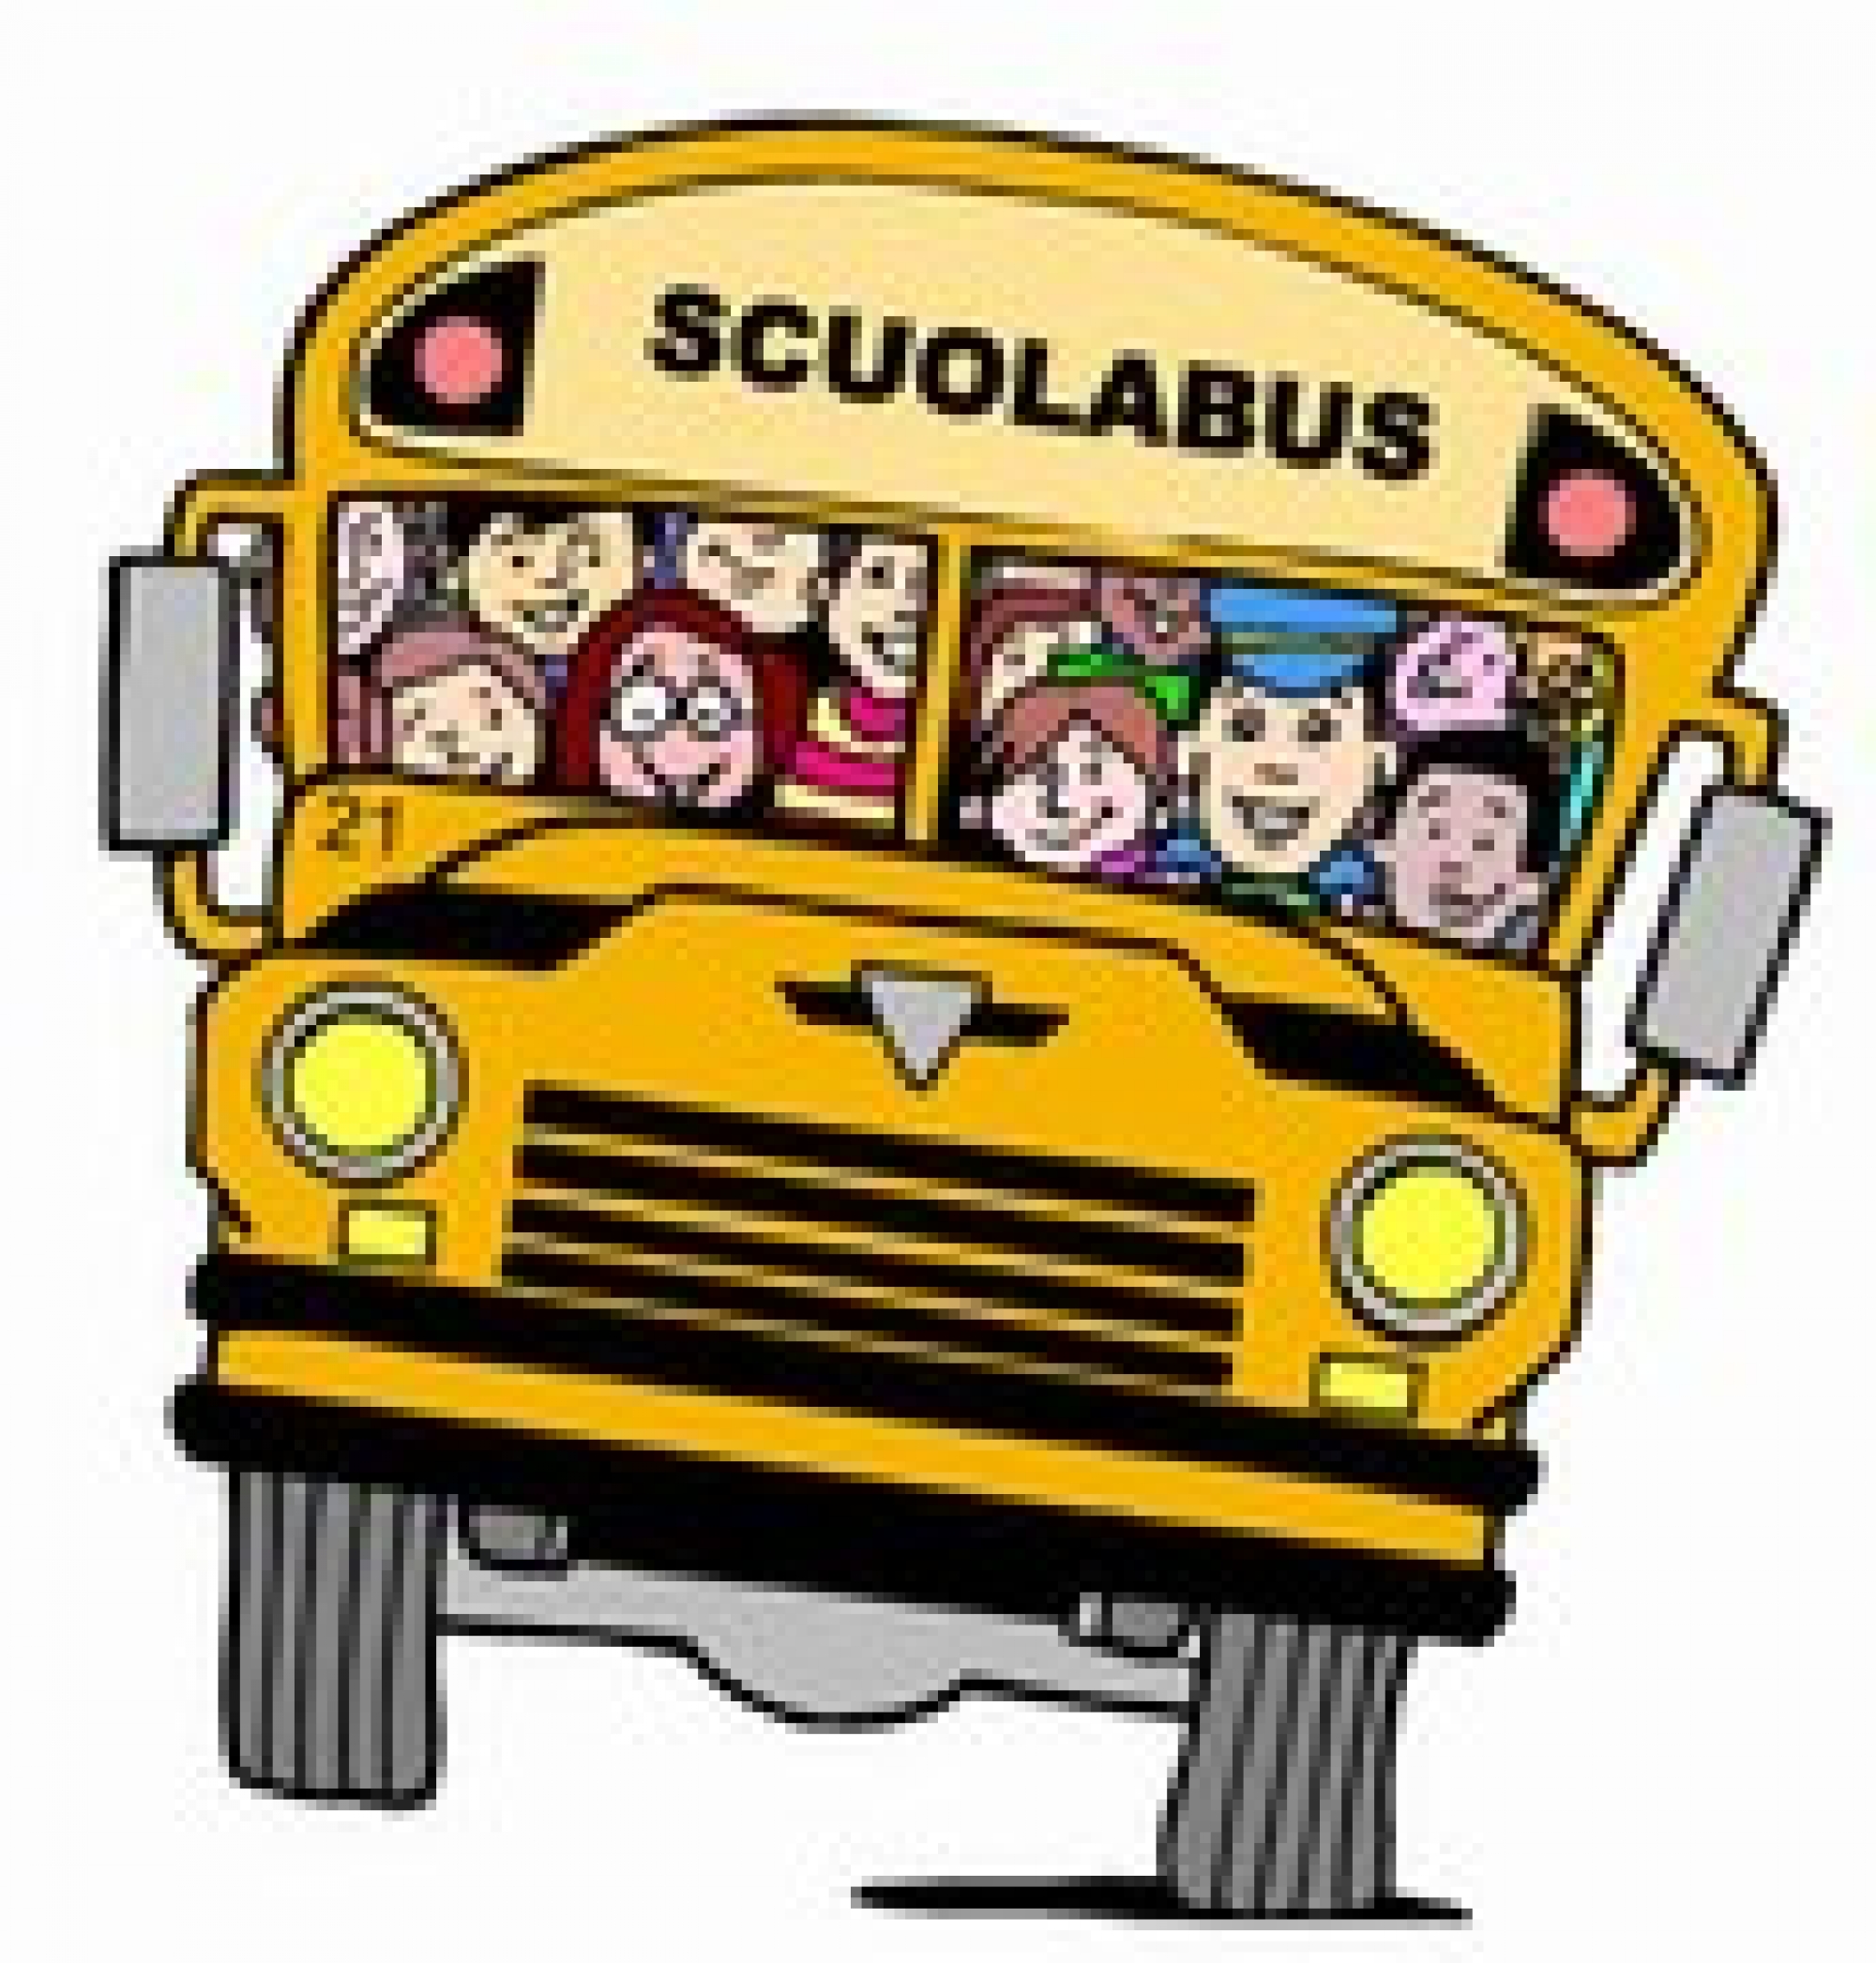 Trasporto scolastico: orario provvisorio scuolabus A.S. 2020/2021